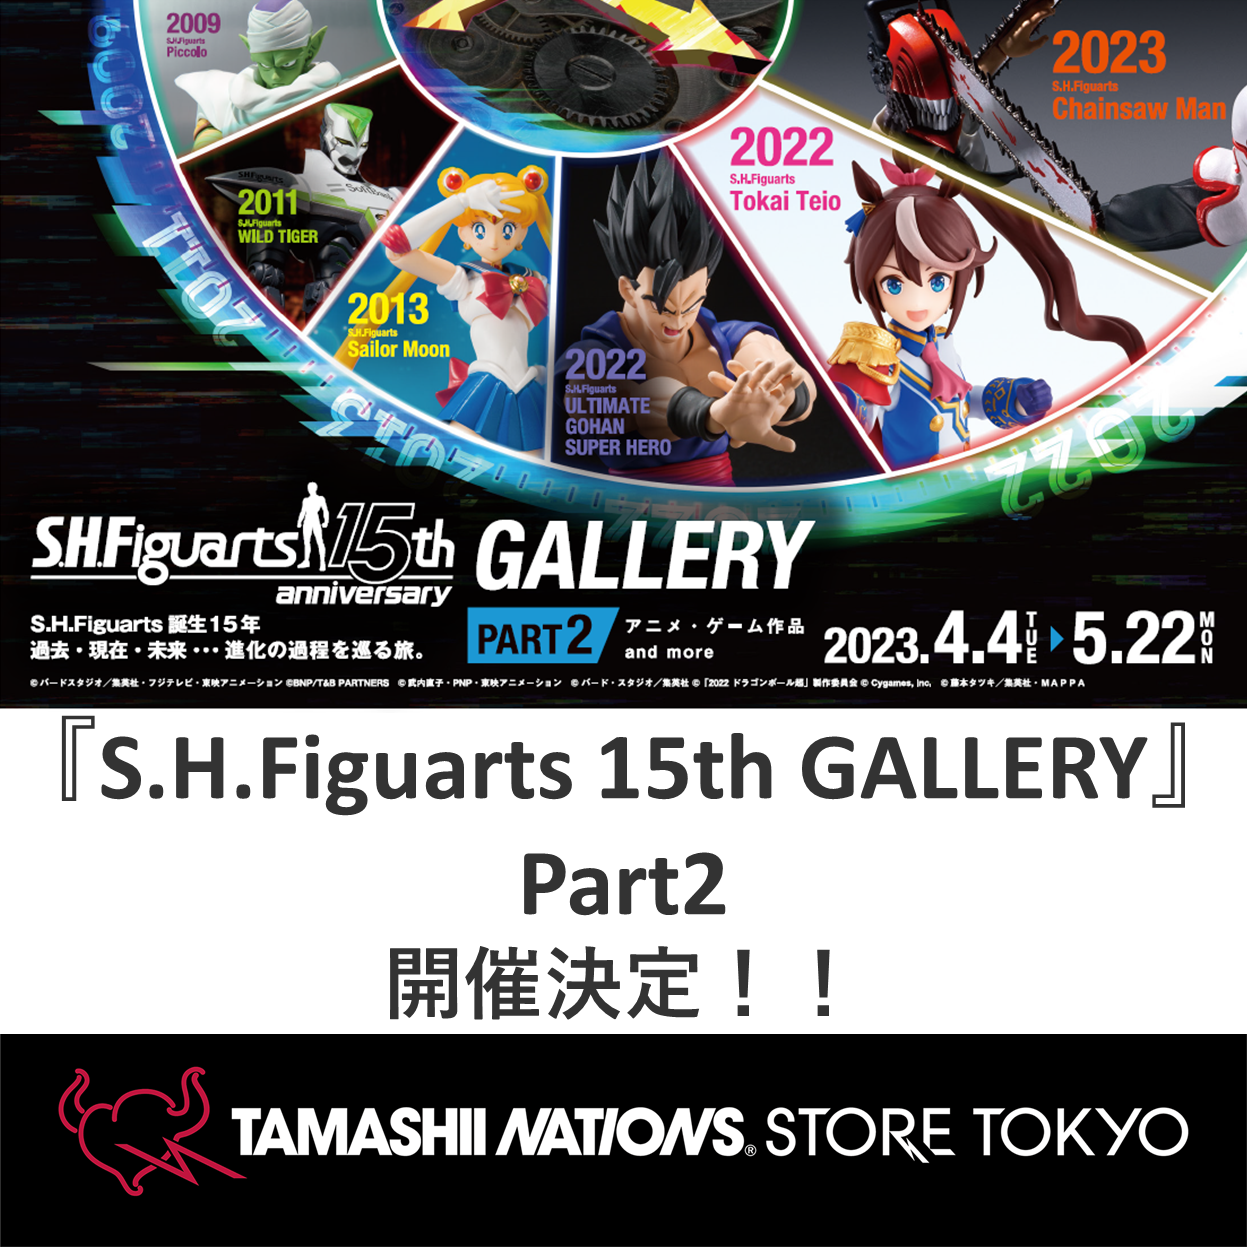 Sitio web especial [TAMASHII STORE] ¡Ya está disponible la información sobre la exposición "S.H.Figuarts 15th GALLERY - PART2"!